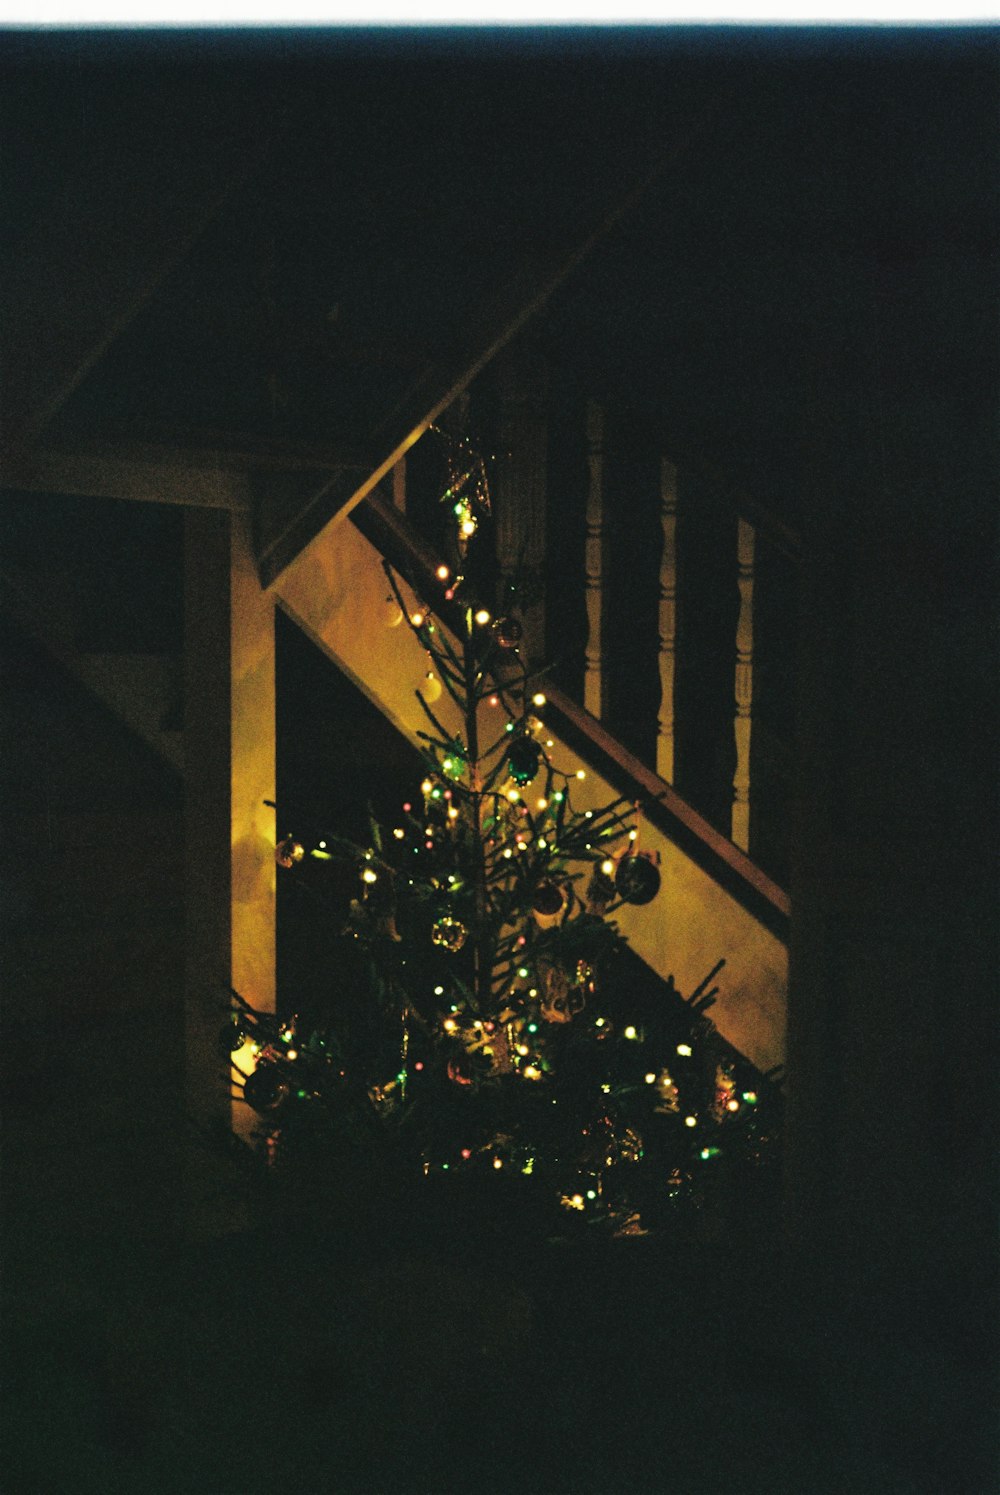 Un albero di Natale illuminato in una stanza buia